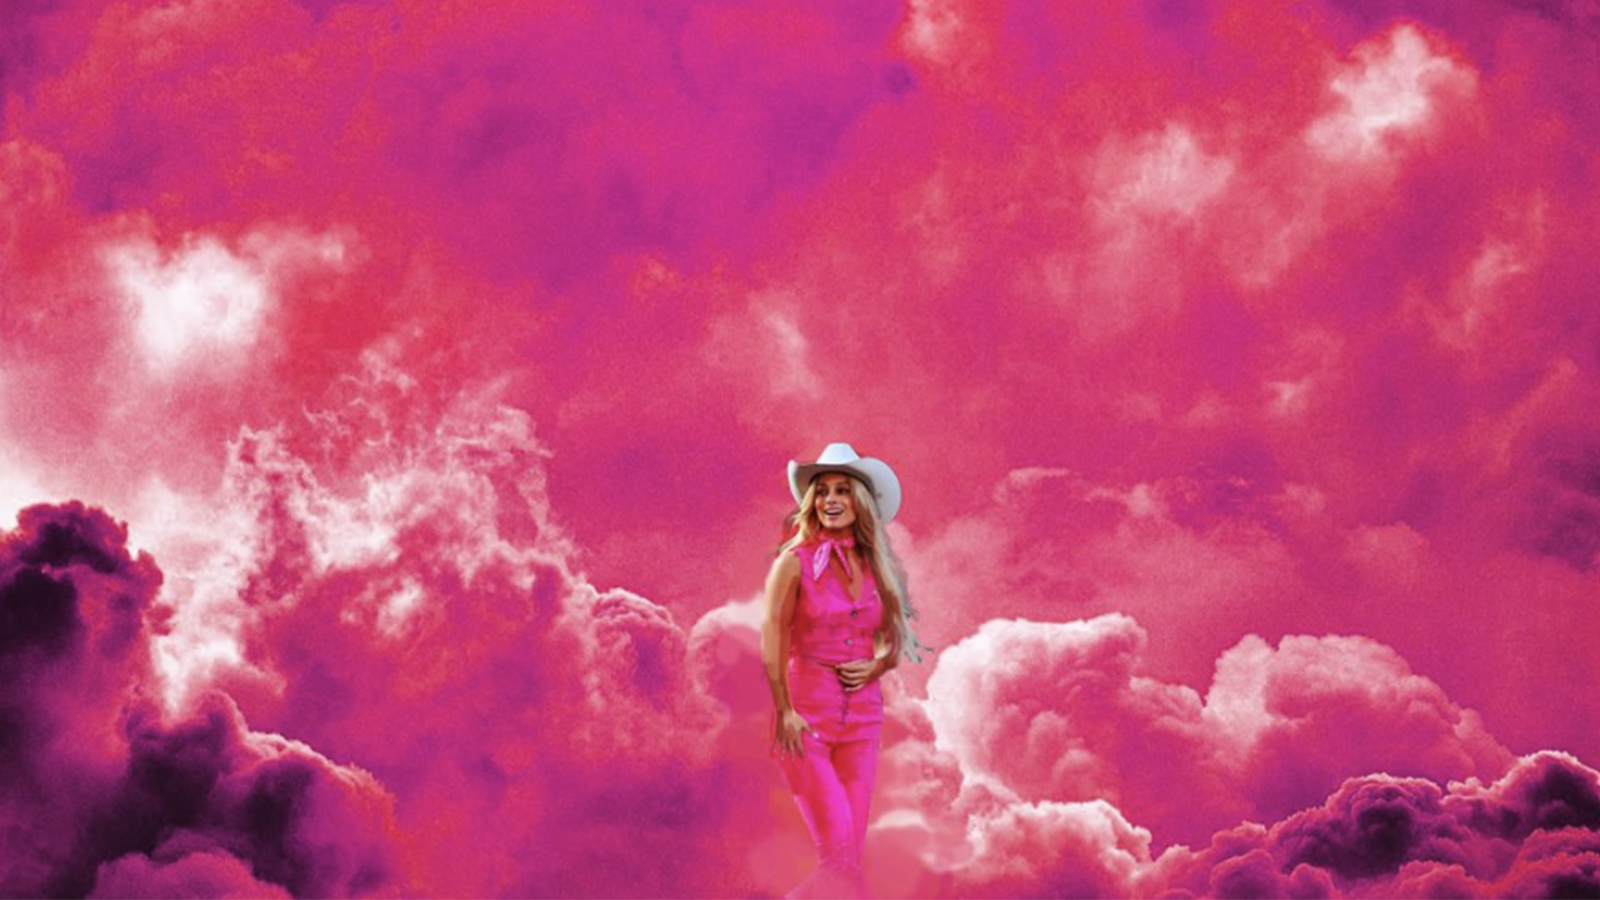 Barbie navega em uma paisagem infernal pós-apocalíptica rosa